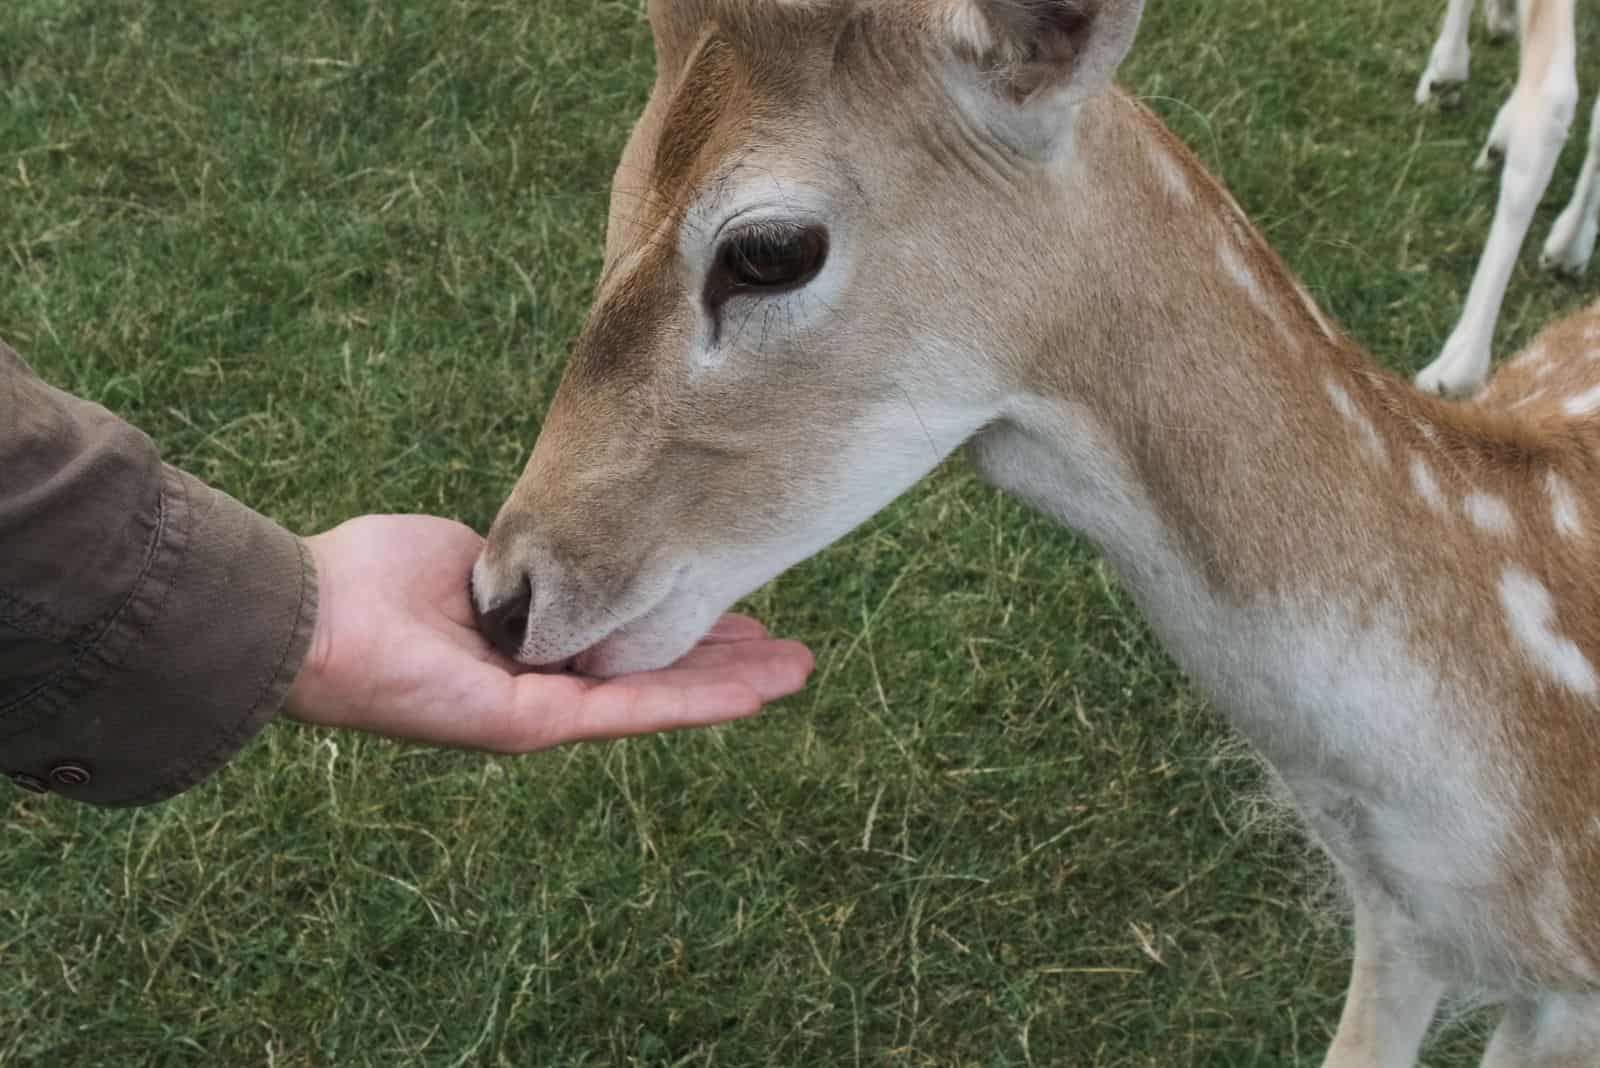 a deer eats from a man's hand